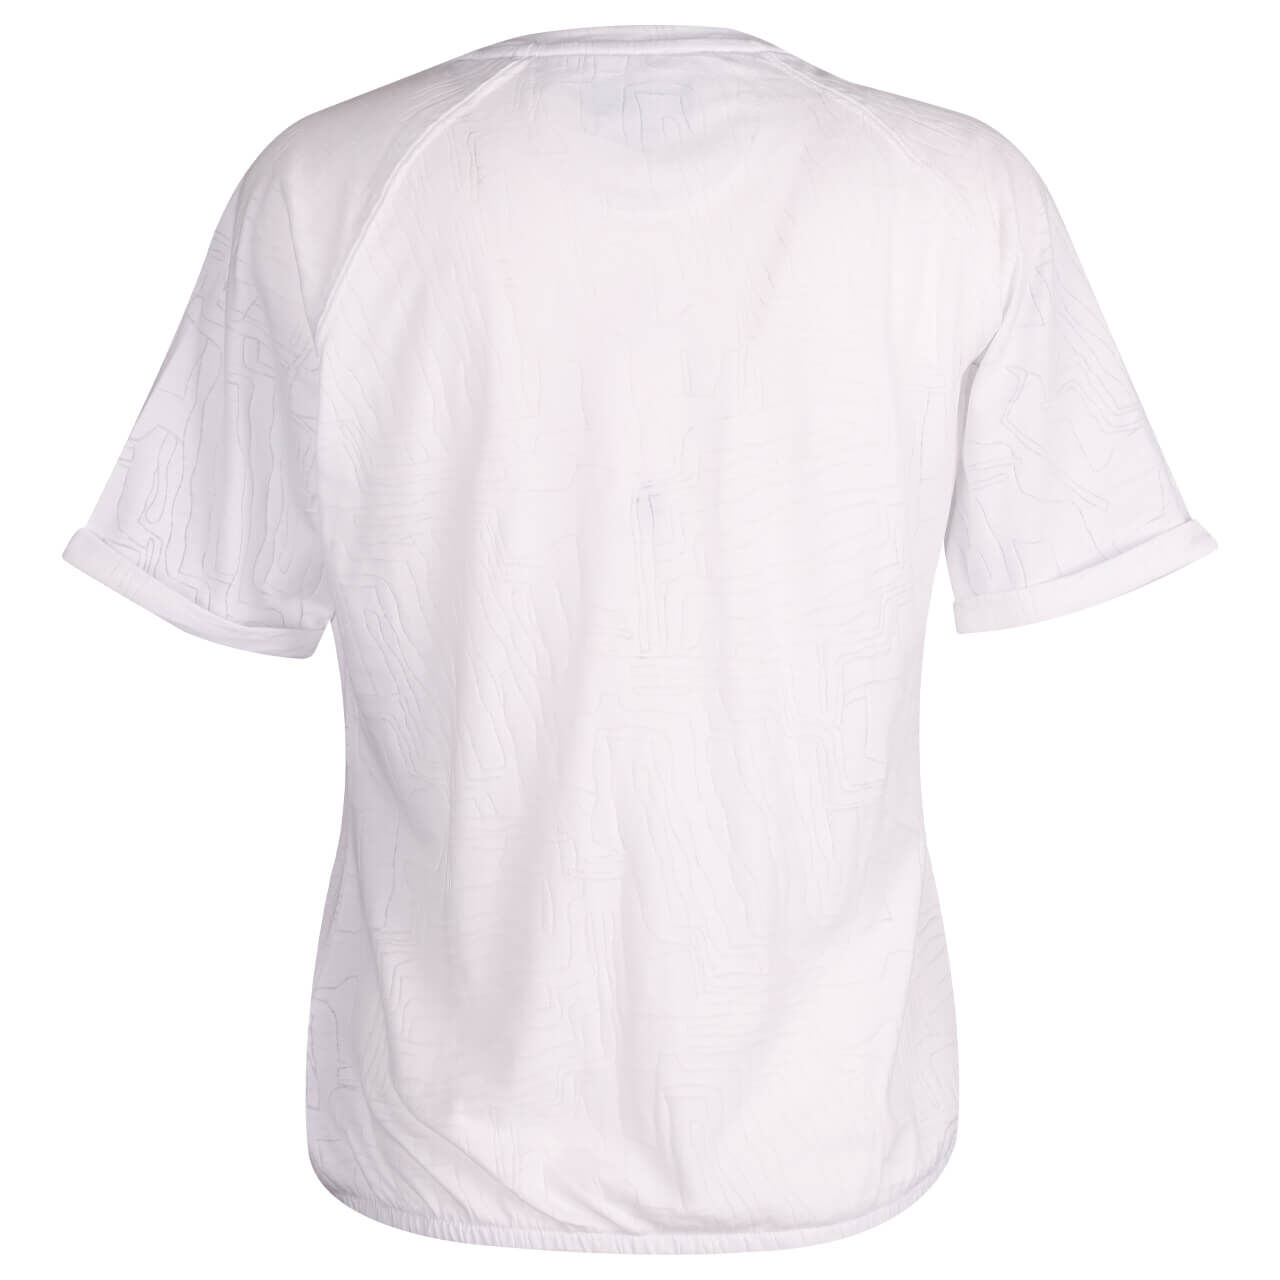 Soquesto Damen T-Shirt burnout white 